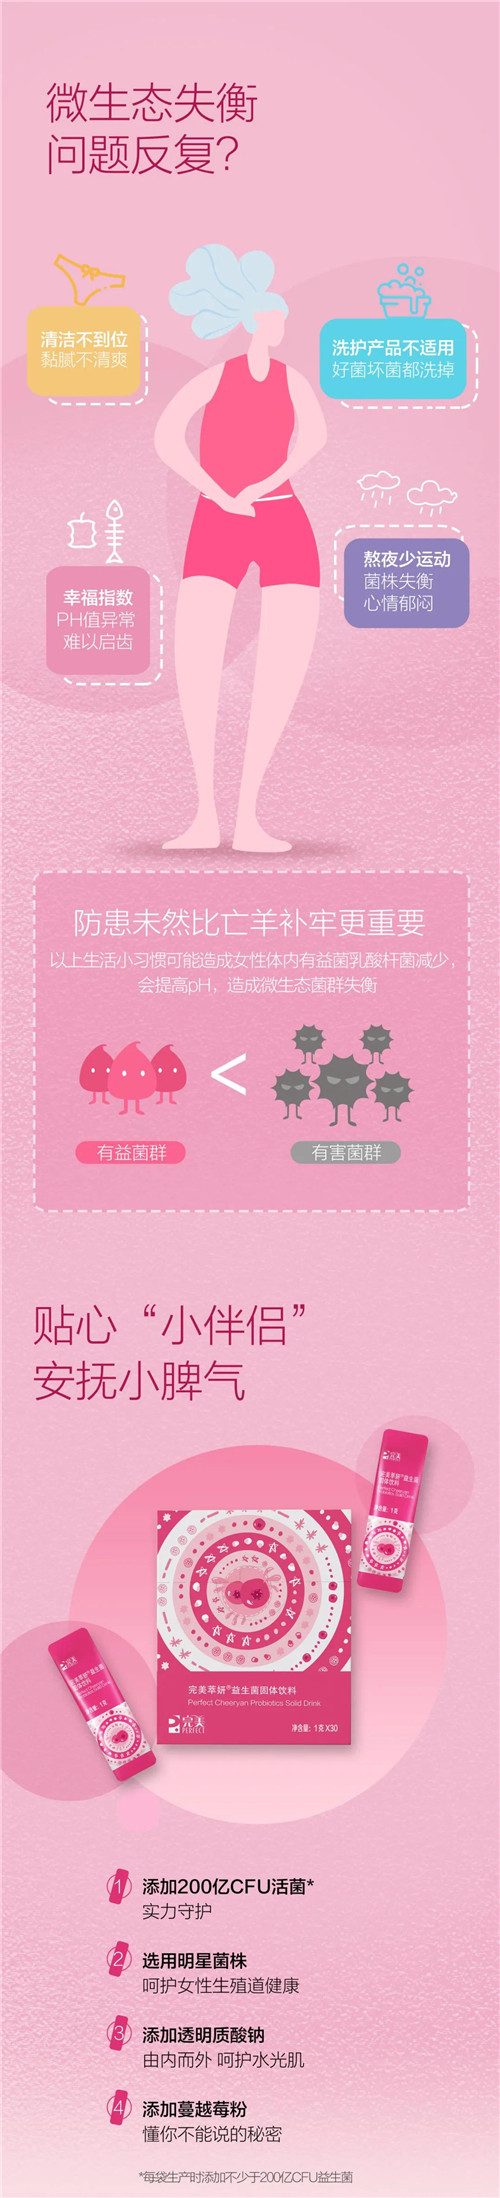 完美萃妍®益生菌固体饮料|即日起新品上市(图2)